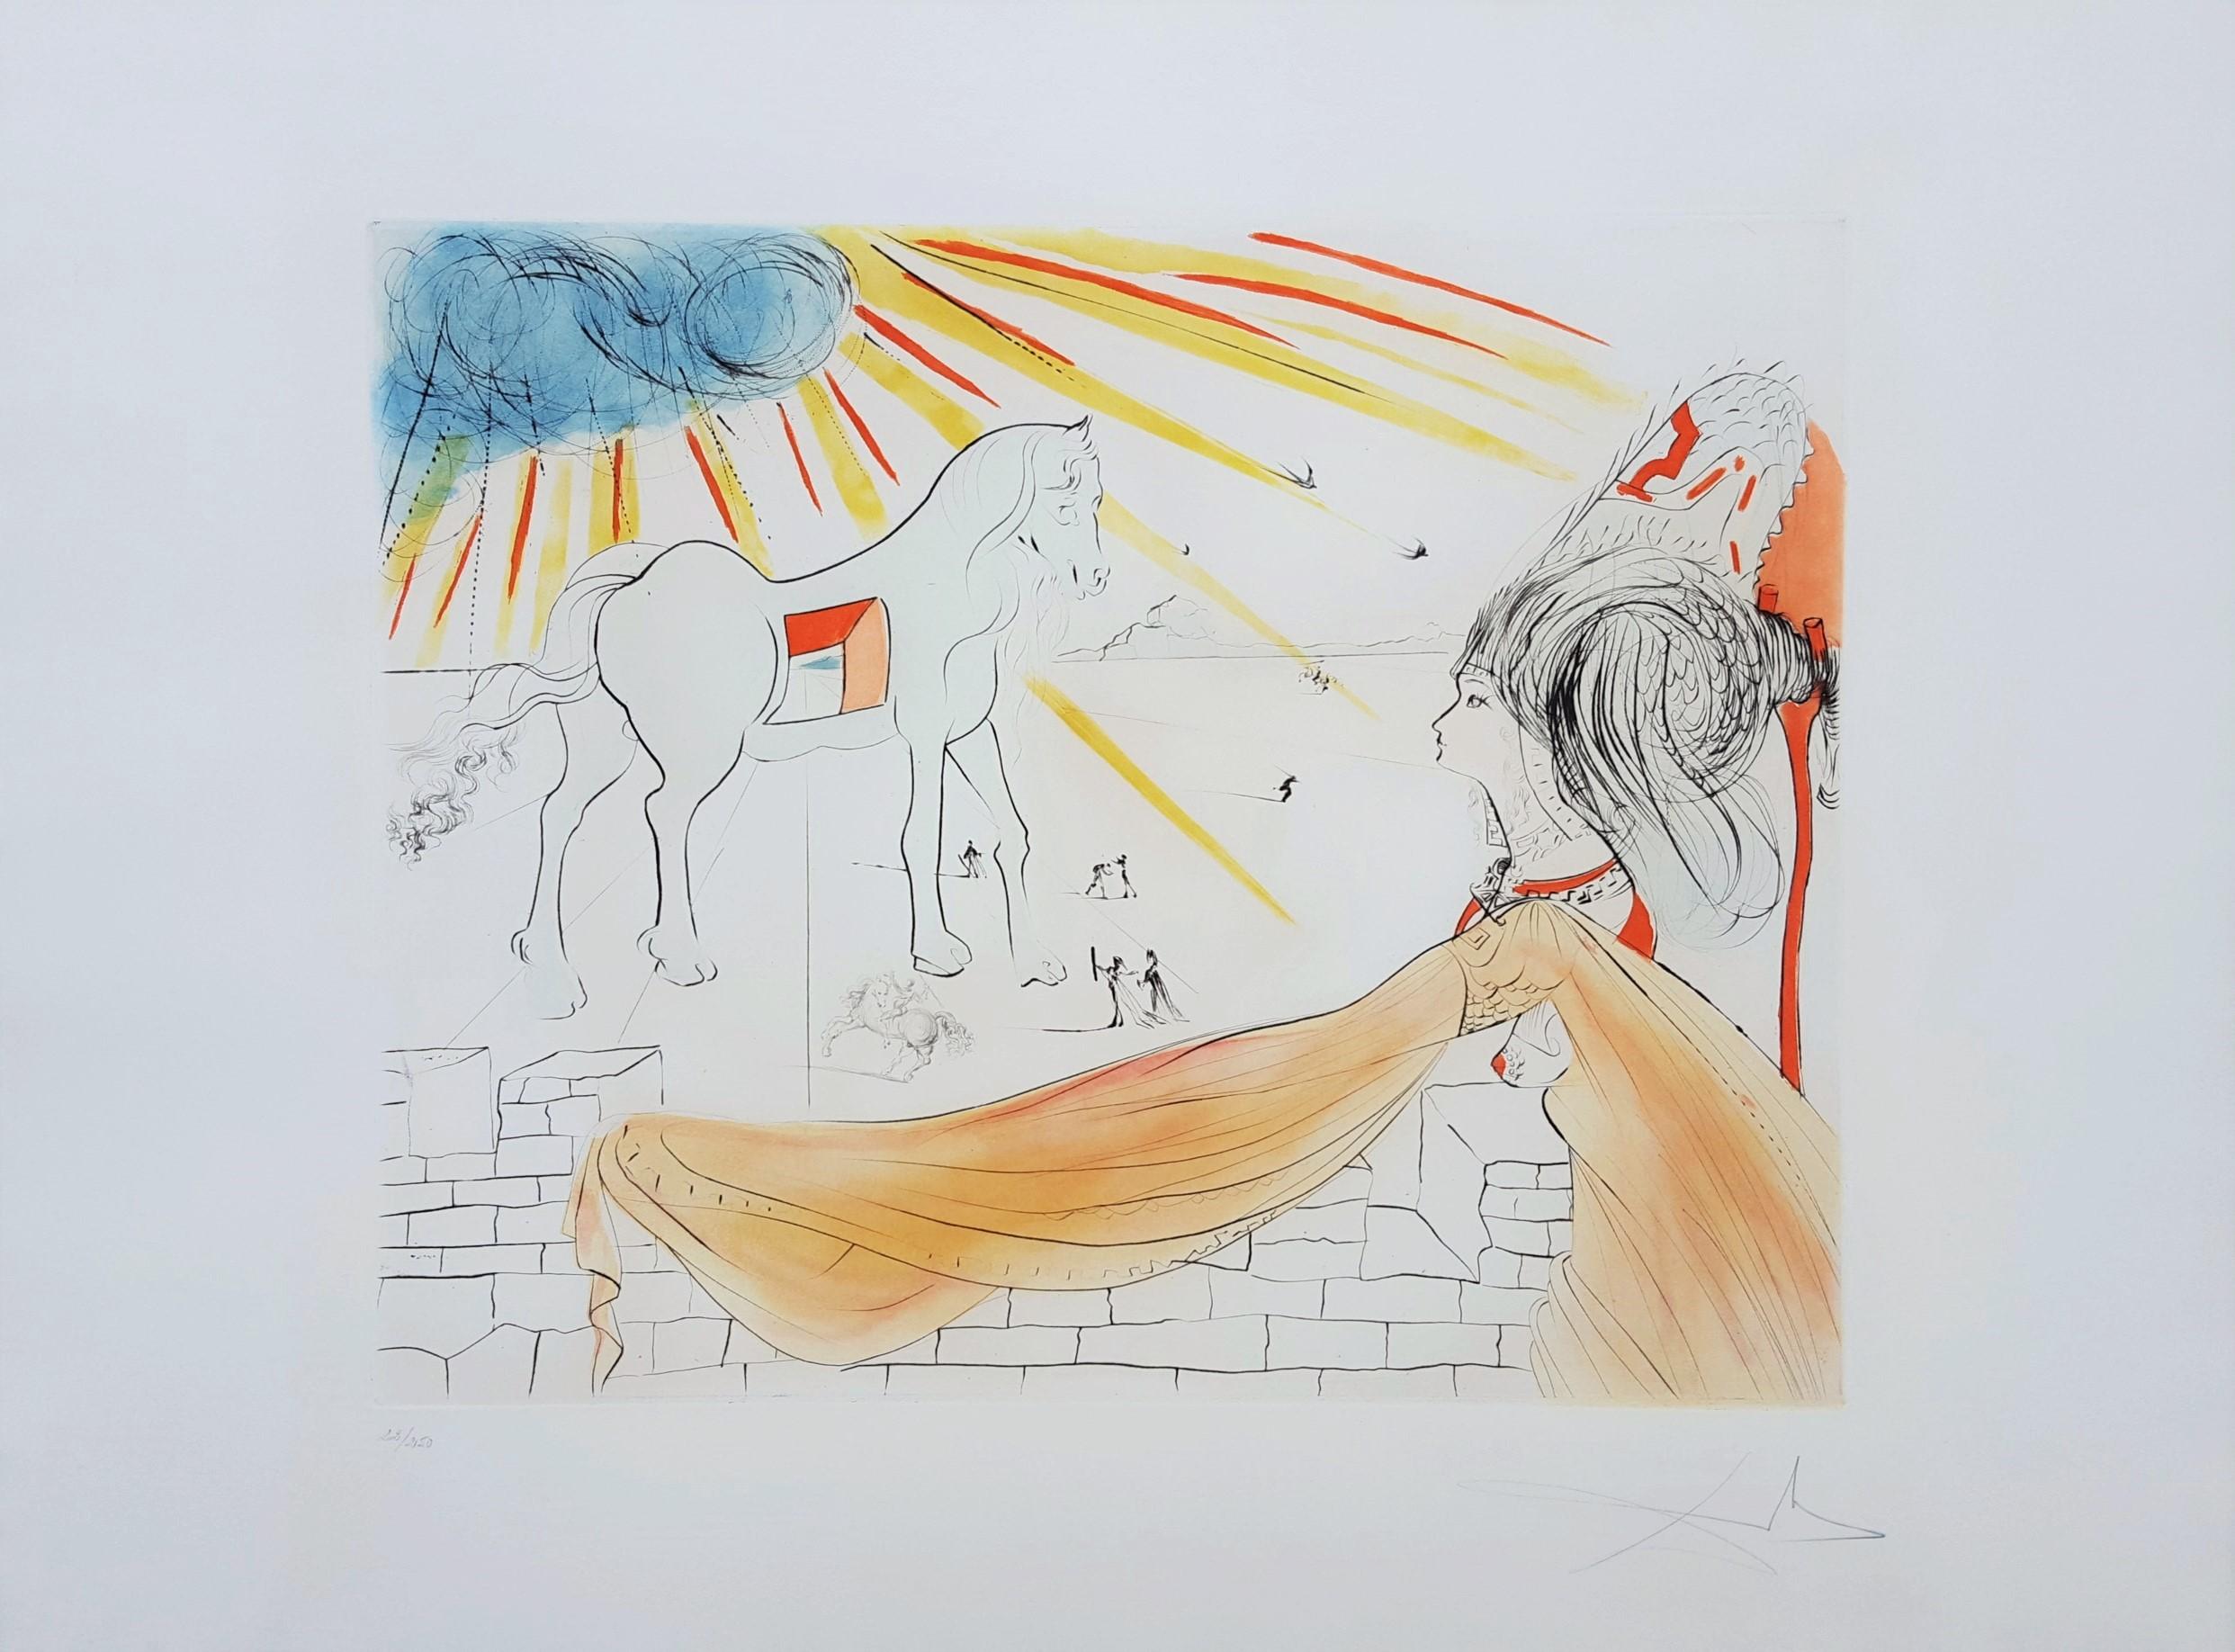 Helen and the Trojan Horse (Hélène et le cheval de Troie) - Print by Salvador Dalí